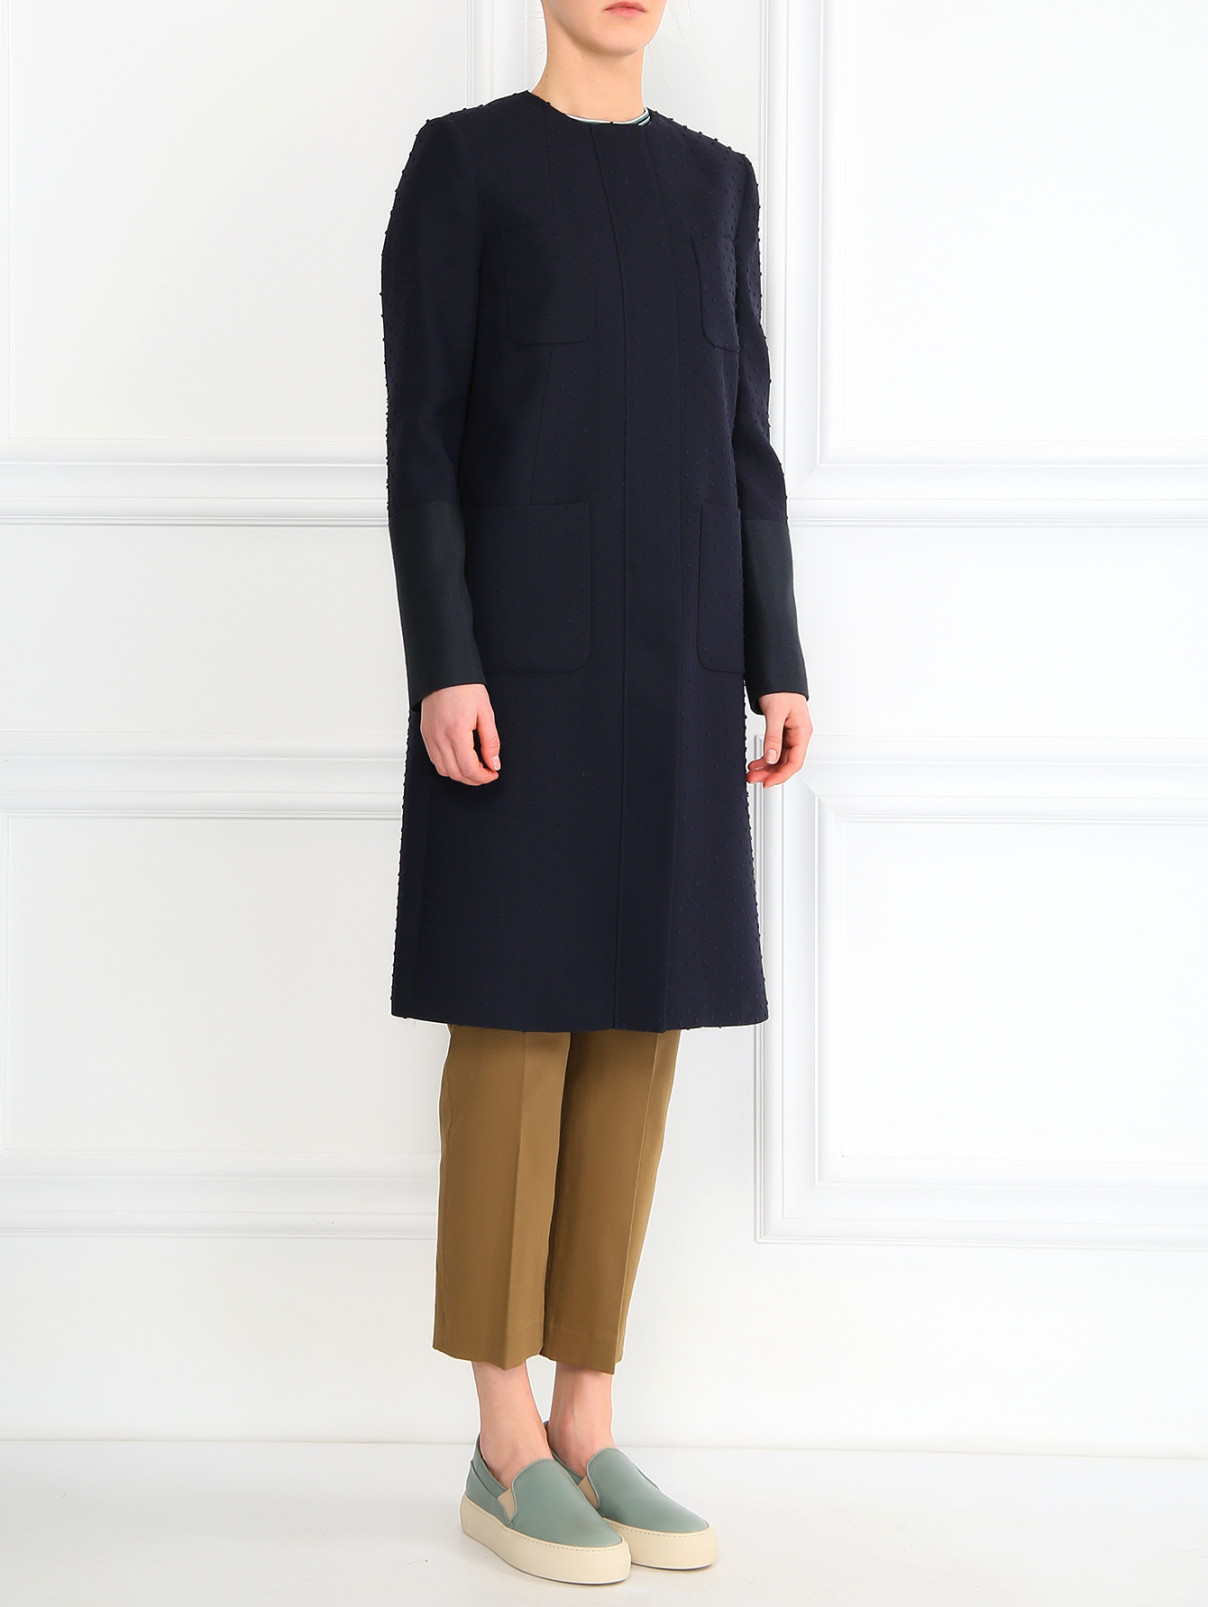 Пальто прямого фасона с боковыми карманами Paul Smith  –  Модель Общий вид  – Цвет:  Синий